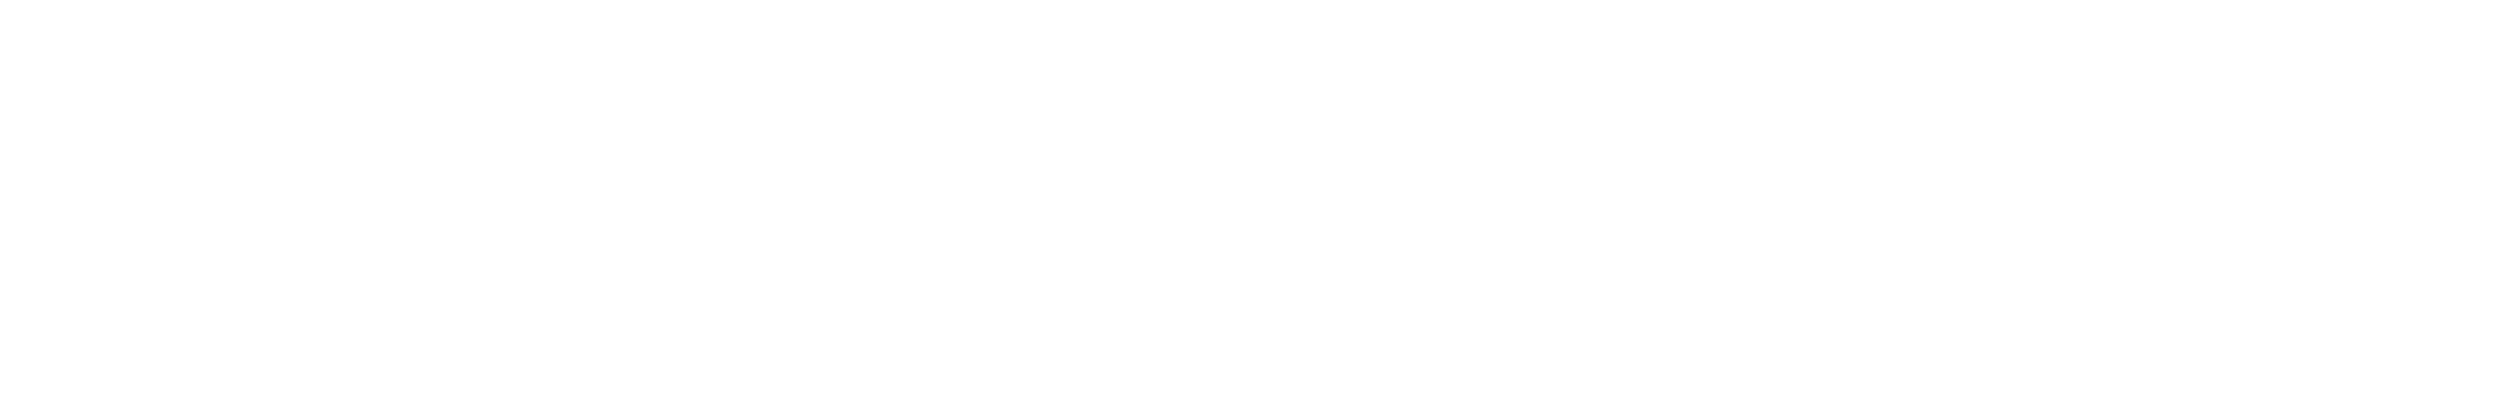 Shopify_Plus